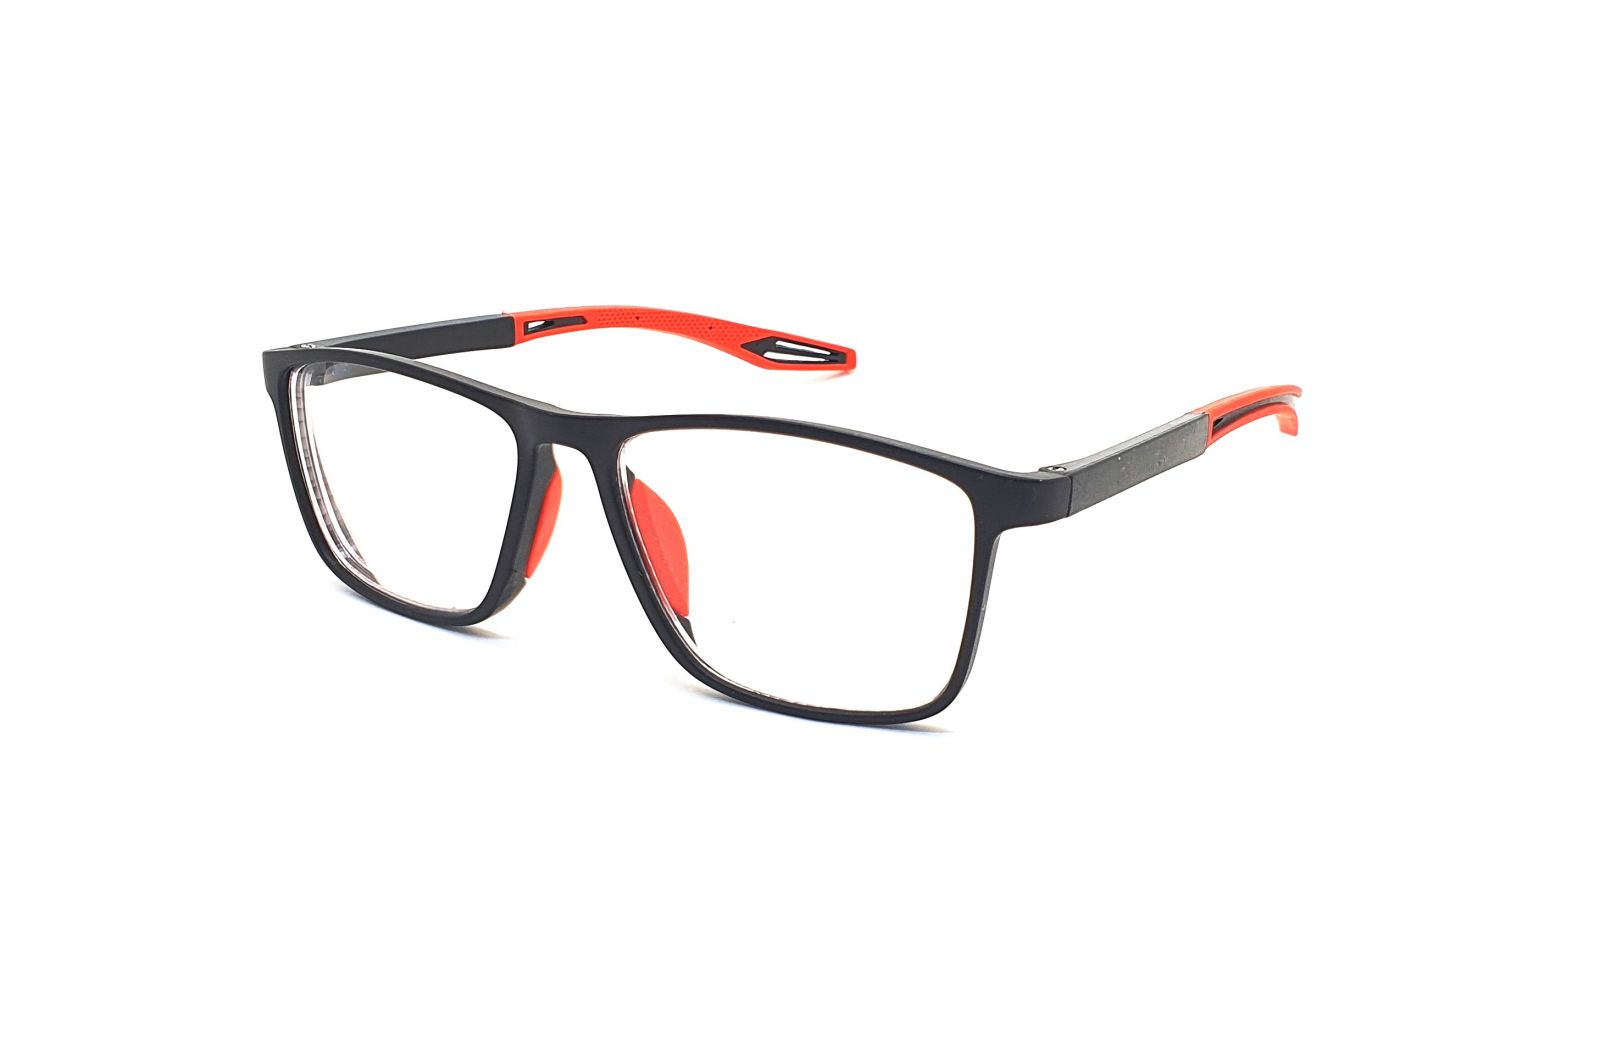 Samozabarvovací dioptrické brýle F04 / +2,00 black/red